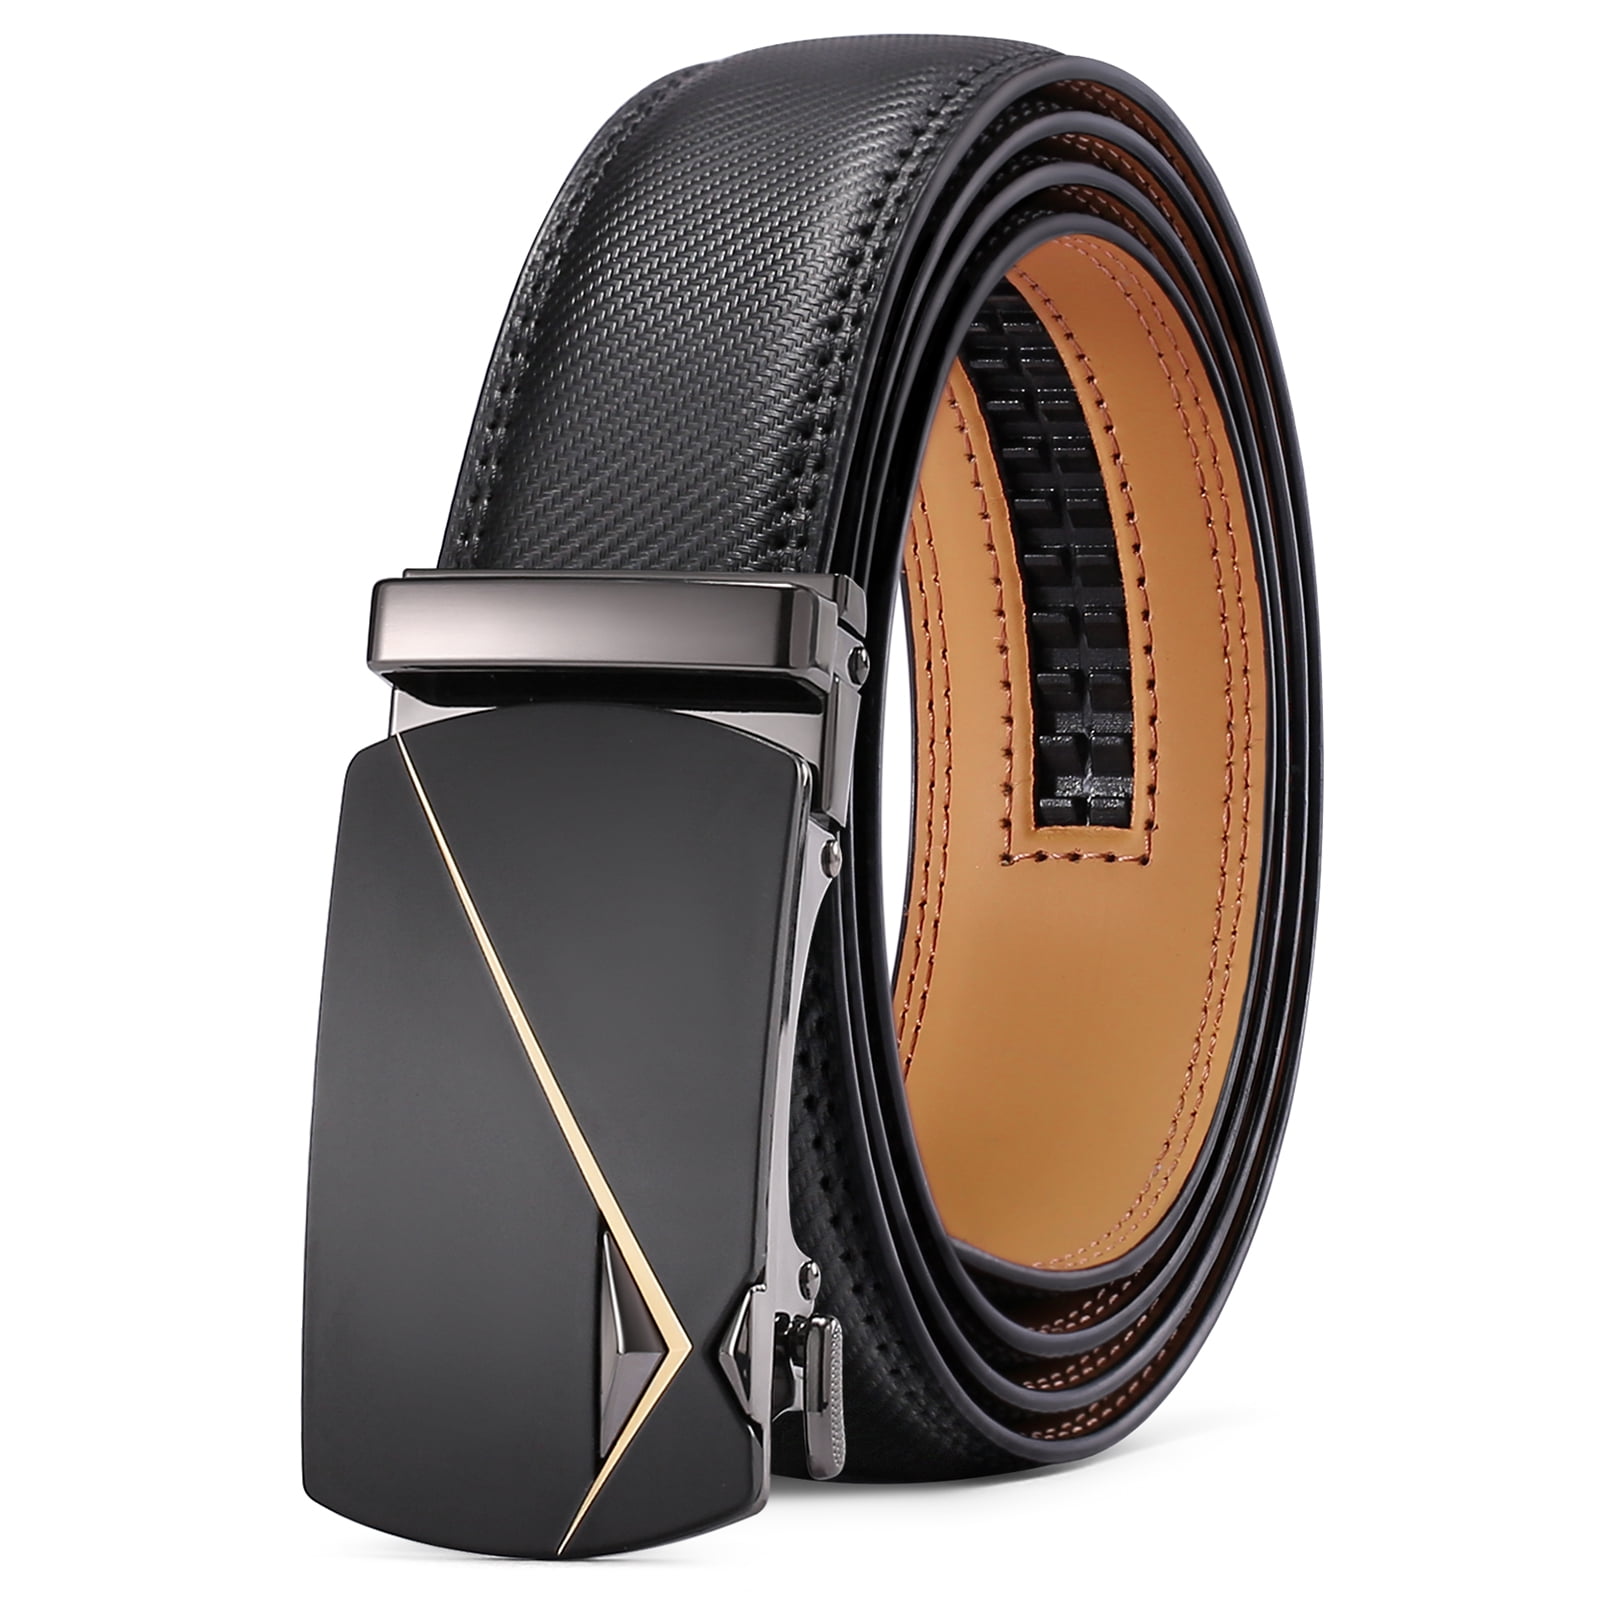 SENDEFN Leather Belt for Men Automatic Ratchet Buckle Slide Dress Casual  Belts 1 3/8'' Wide, Adjustable Trim to Fit 